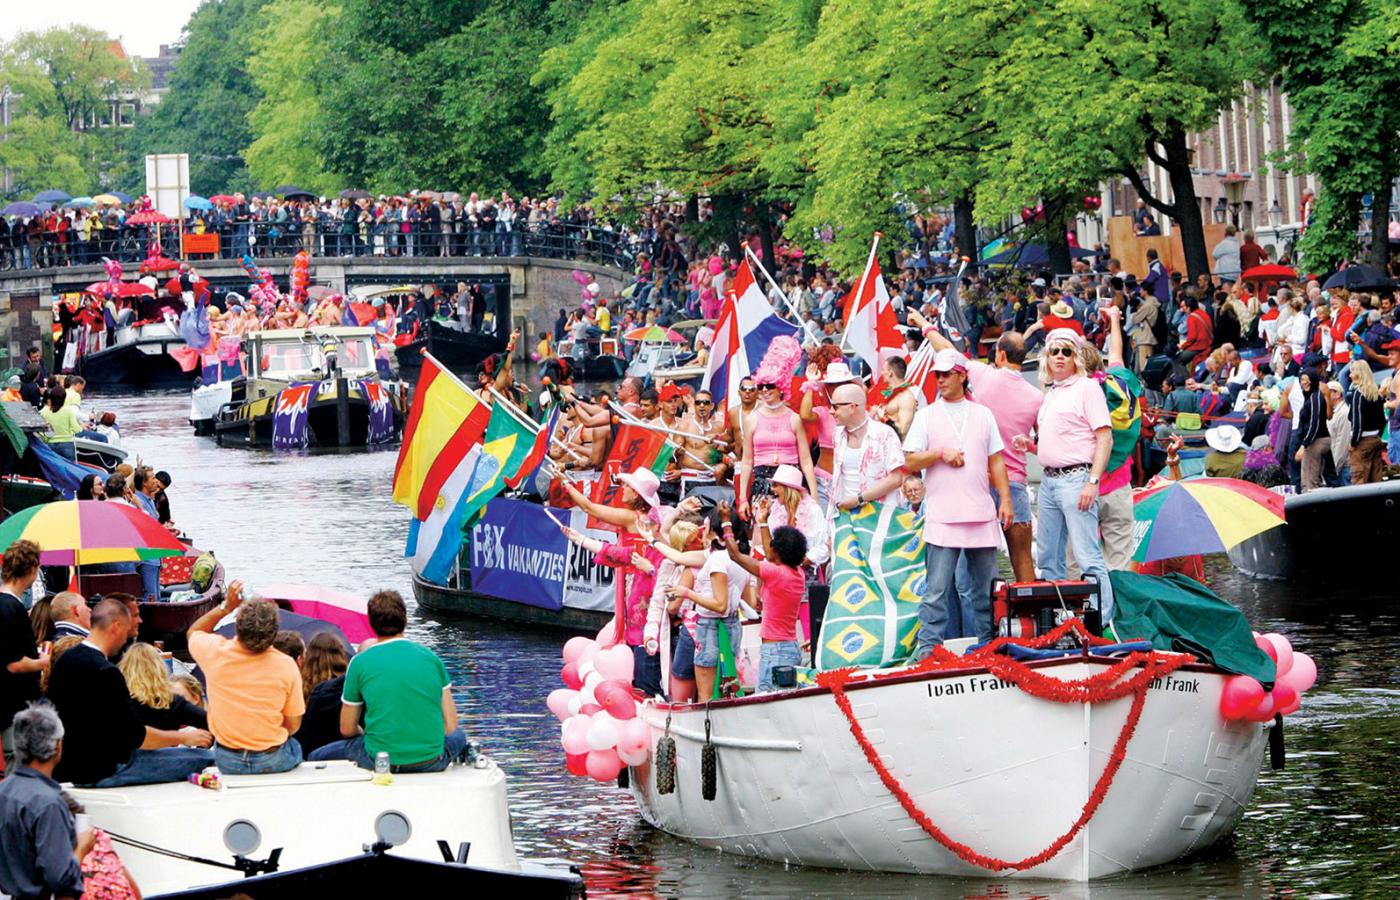 Międzynarodowa parada gejowska w Amsterdamie. Holandia, niegdyś wzór tolerancji, dziś wydaje coraz głośniejsze ksenofobiczne pomruki.